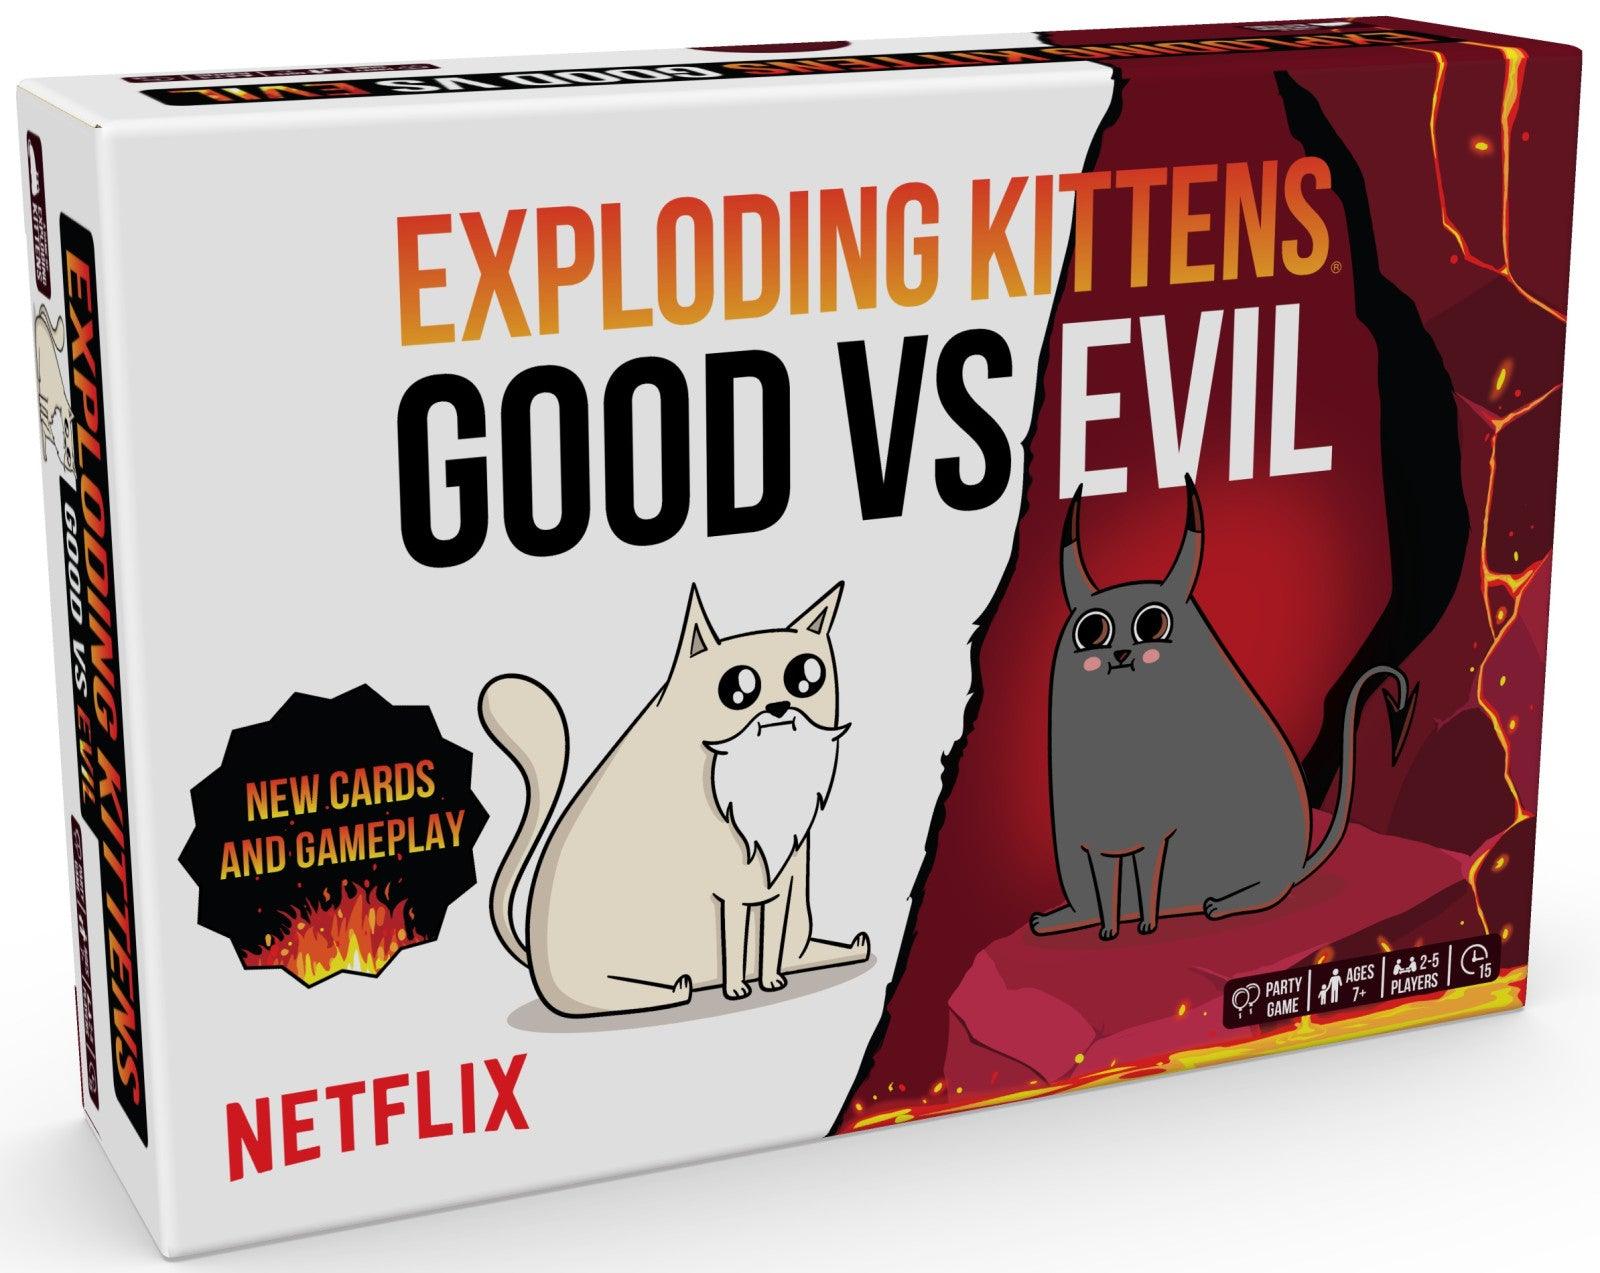 VR-106220 Exploding Kittens - Good vs Evil - Exploding Kittens - Titan Pop Culture